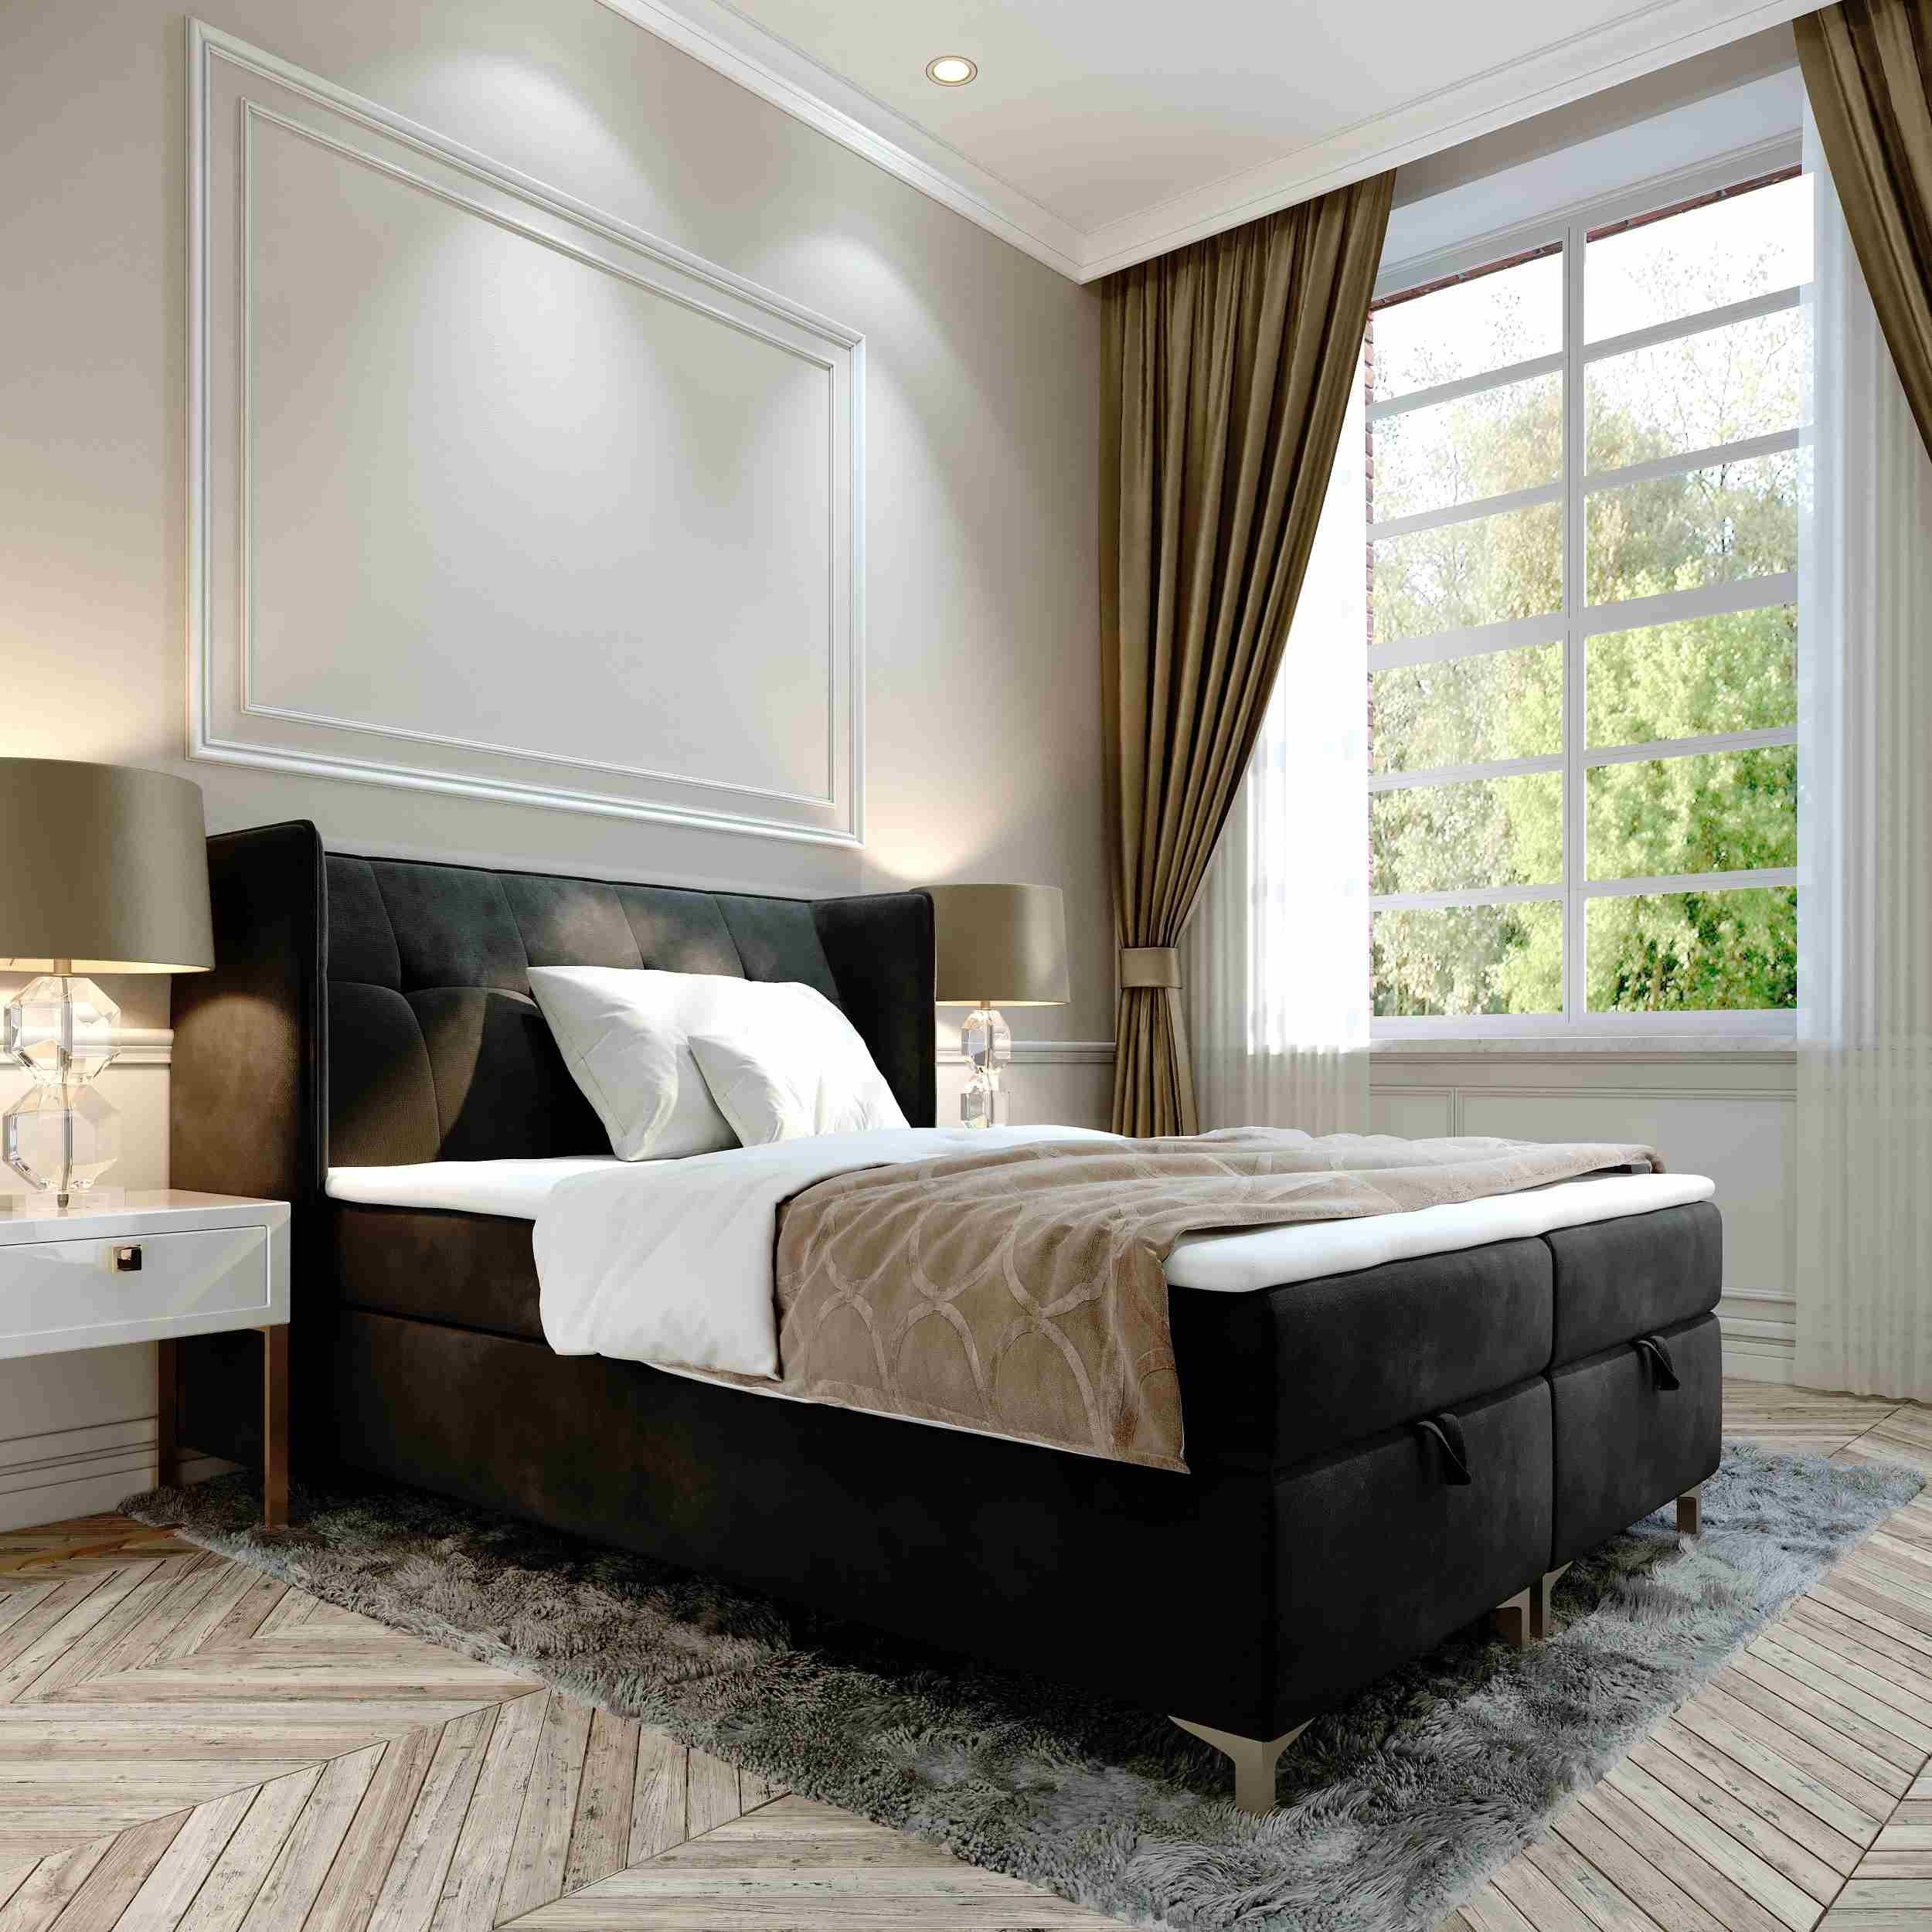 Furnix Polsterbett TOLIE 140,160, 180, 200x 200 cm Bett mit Bettkasten und Topper, wahlweise in 5 Größen und 7 Farben Schwarz